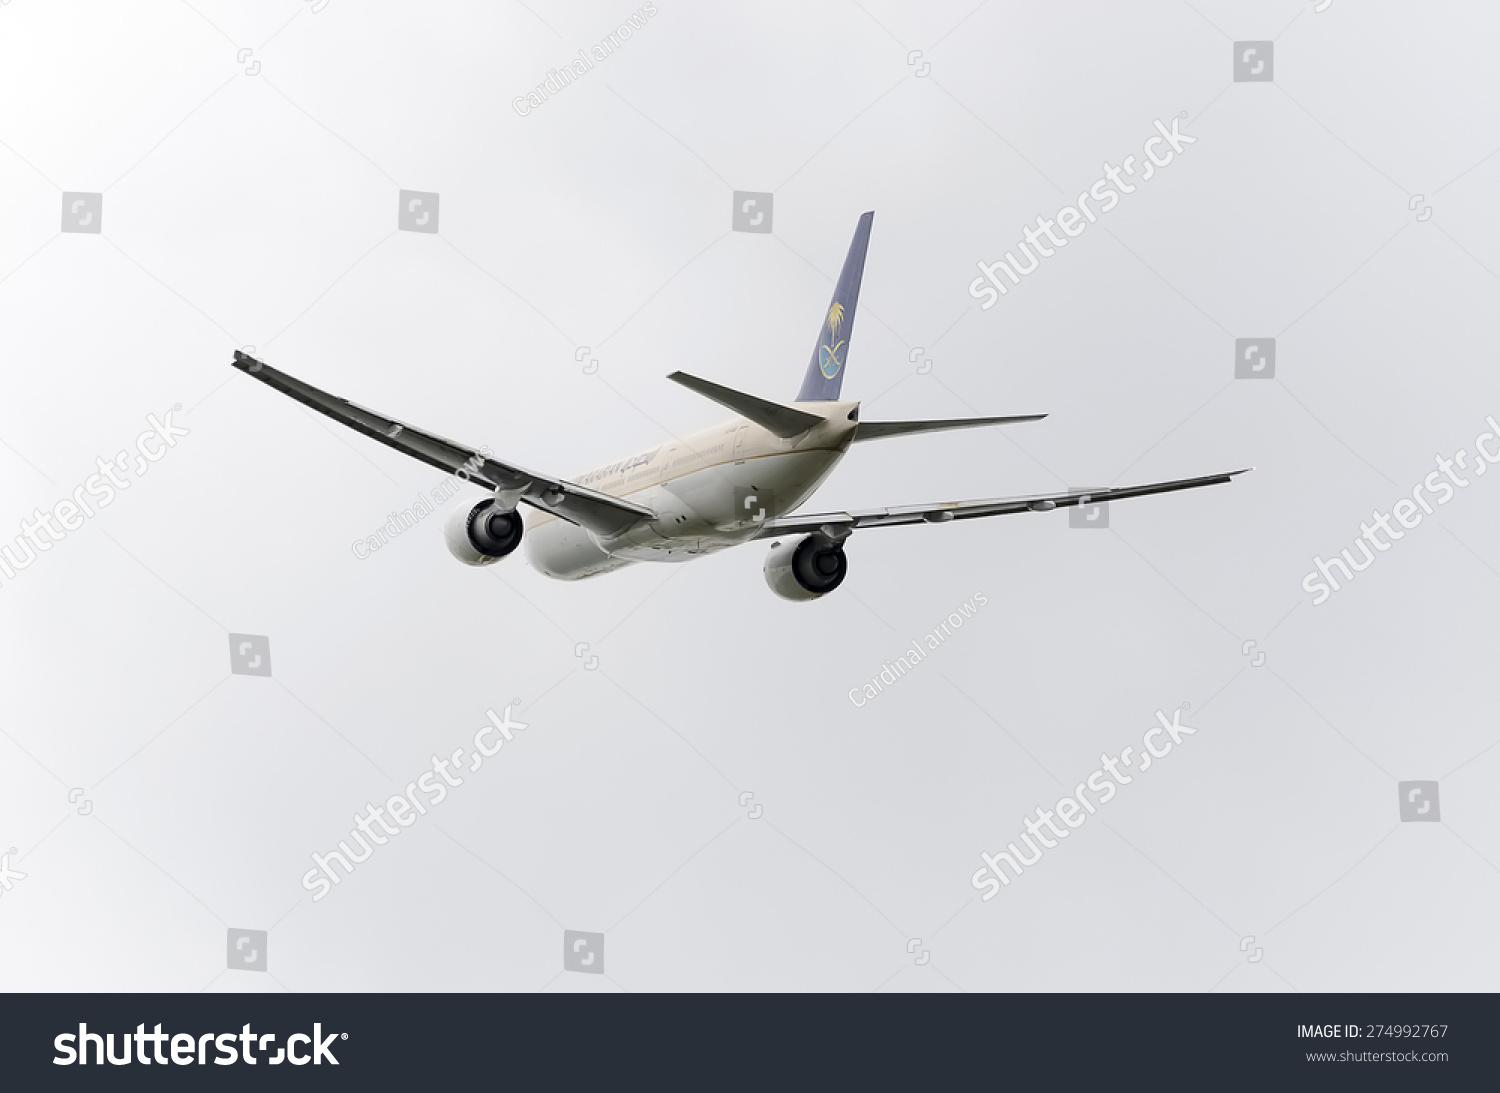 西班牙,马德里,2015年5月3日:波音777 - 268飞